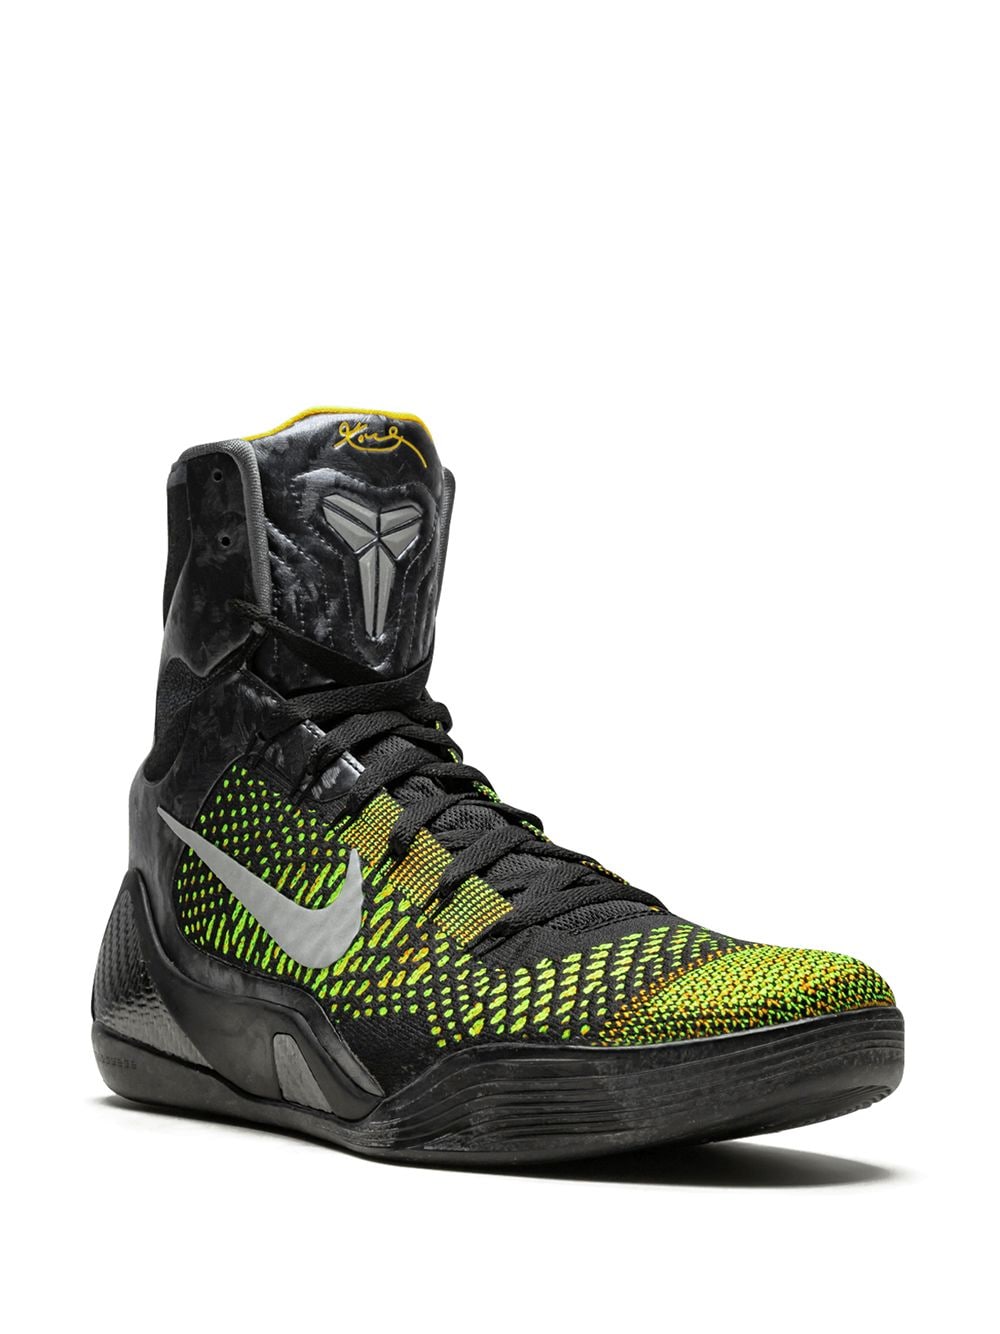 Zapatillas Kobe 9 Elite Nike por 1,209€ - Compra online - Devolución gratuita y pago seguro